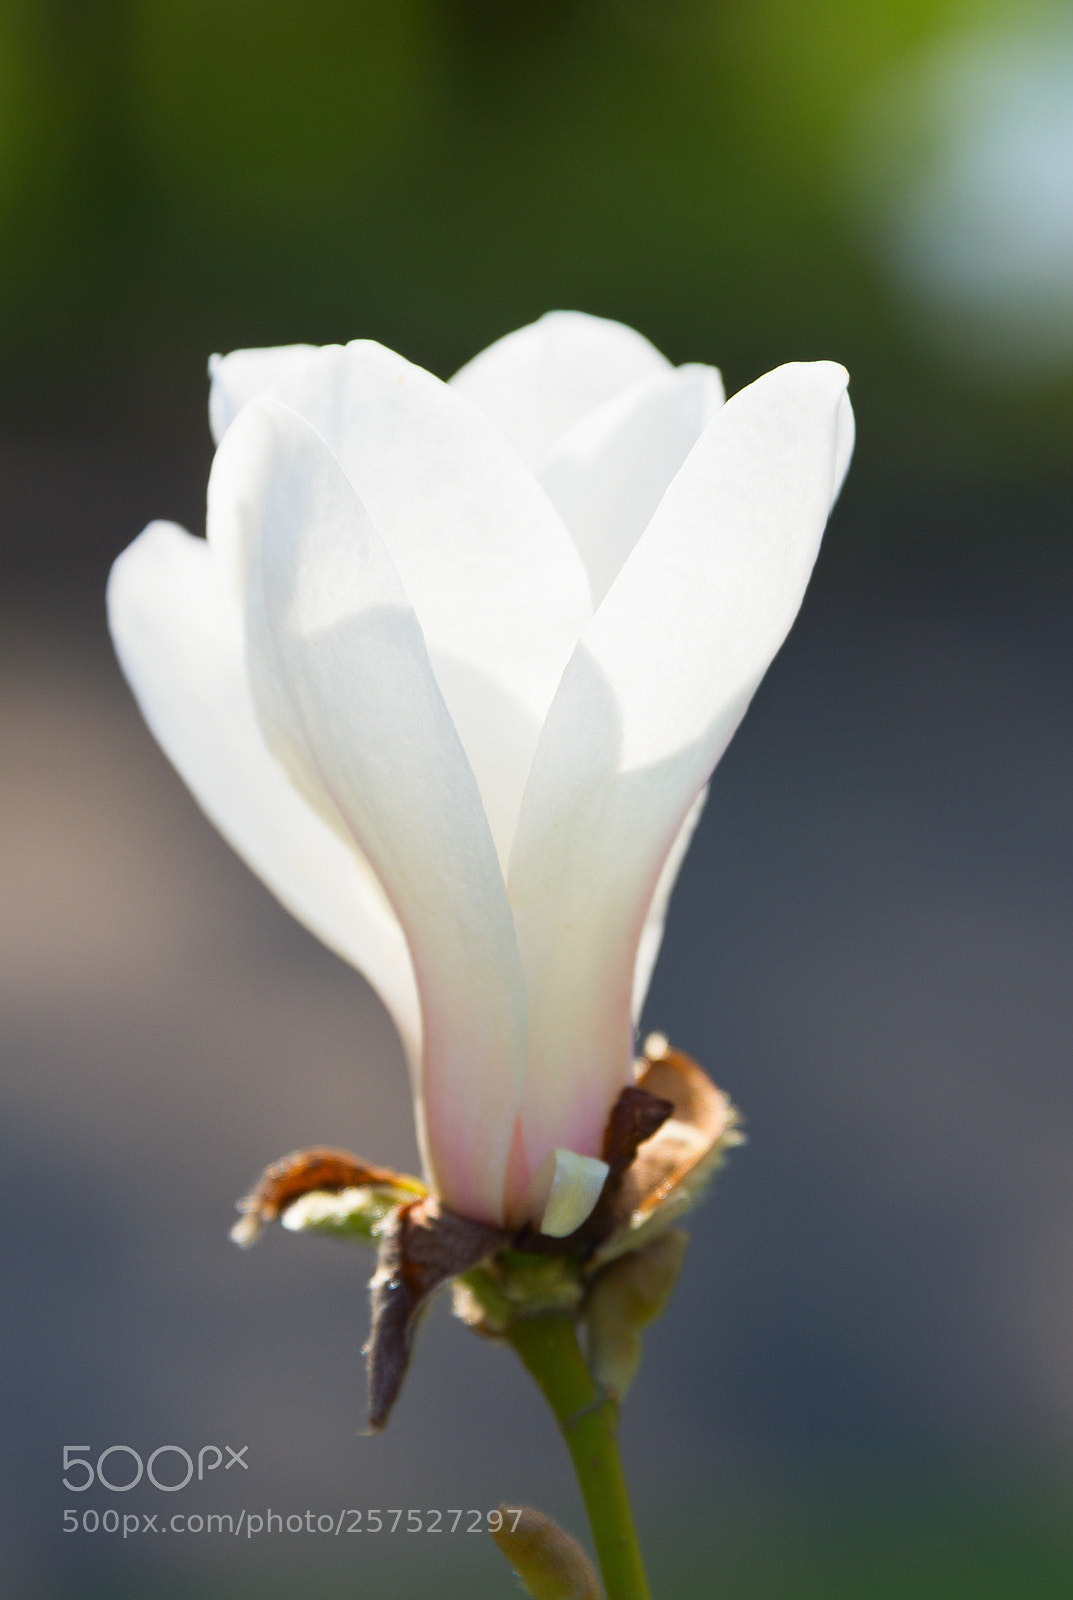 Nikon Df sample photo. Sunny blossom magnolia tree photography